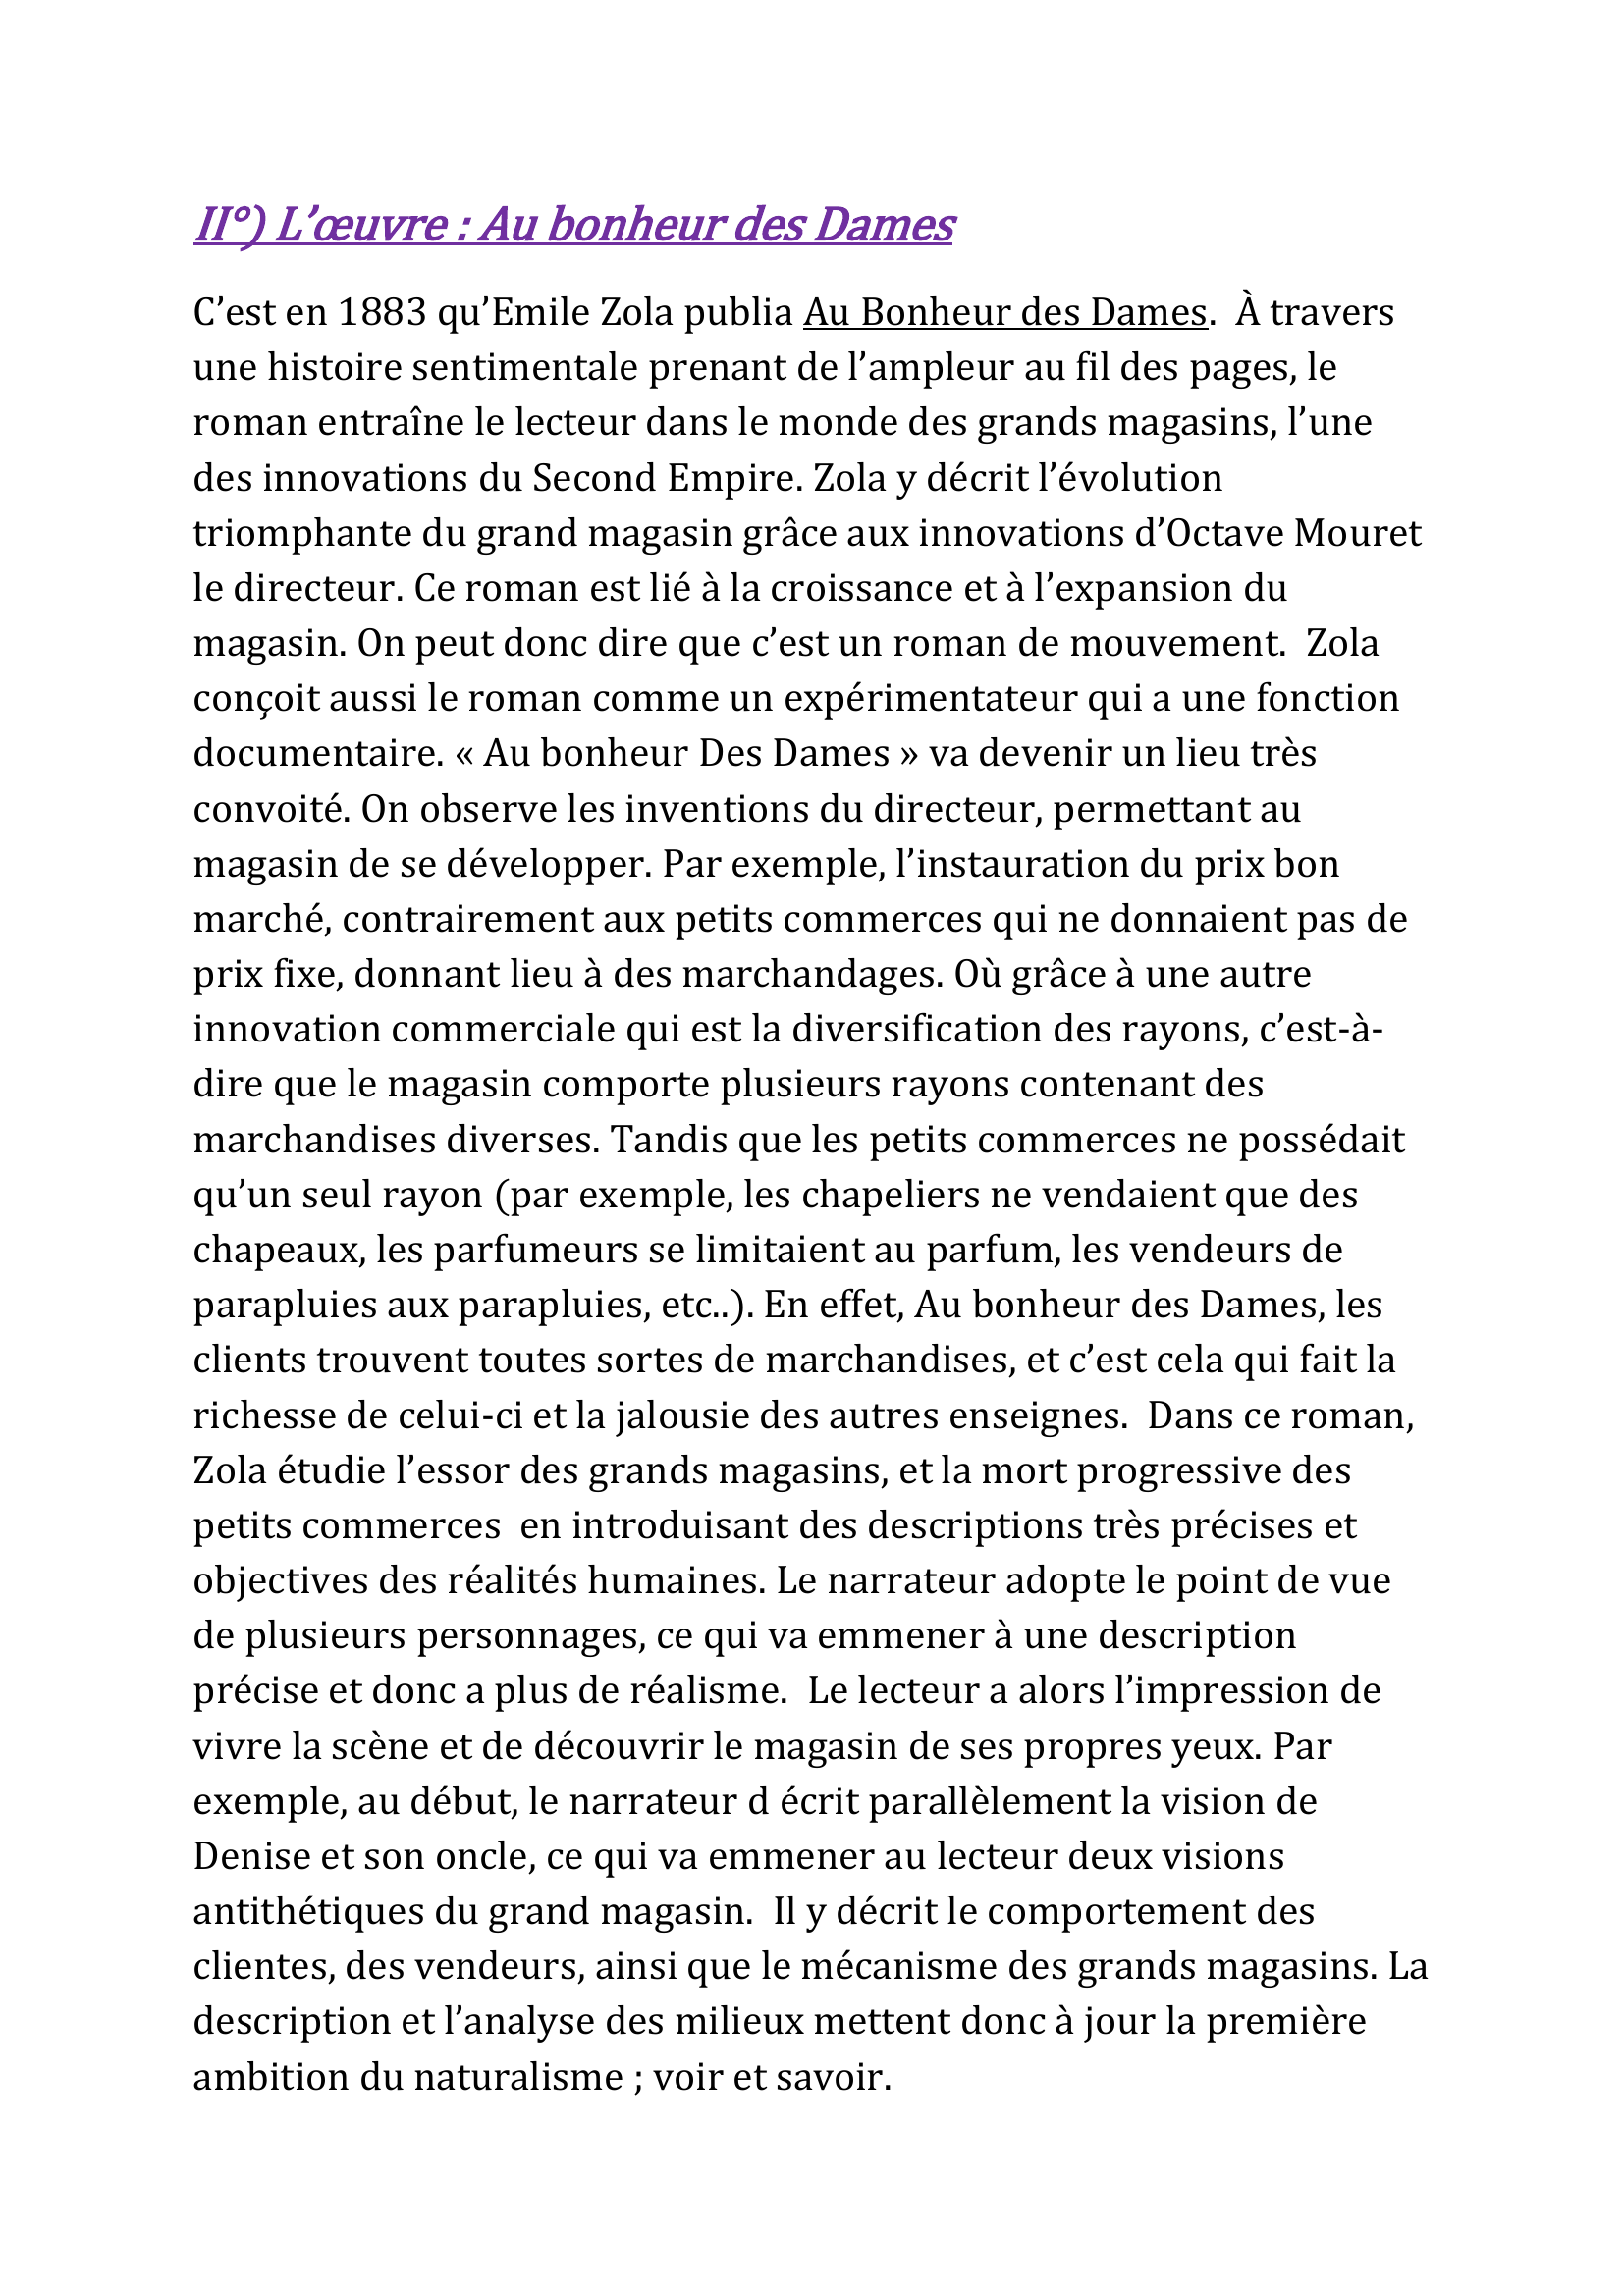 Prévisualisation du document Au bonheur des dames, EMILE ZOLA contexte culturel et sociale